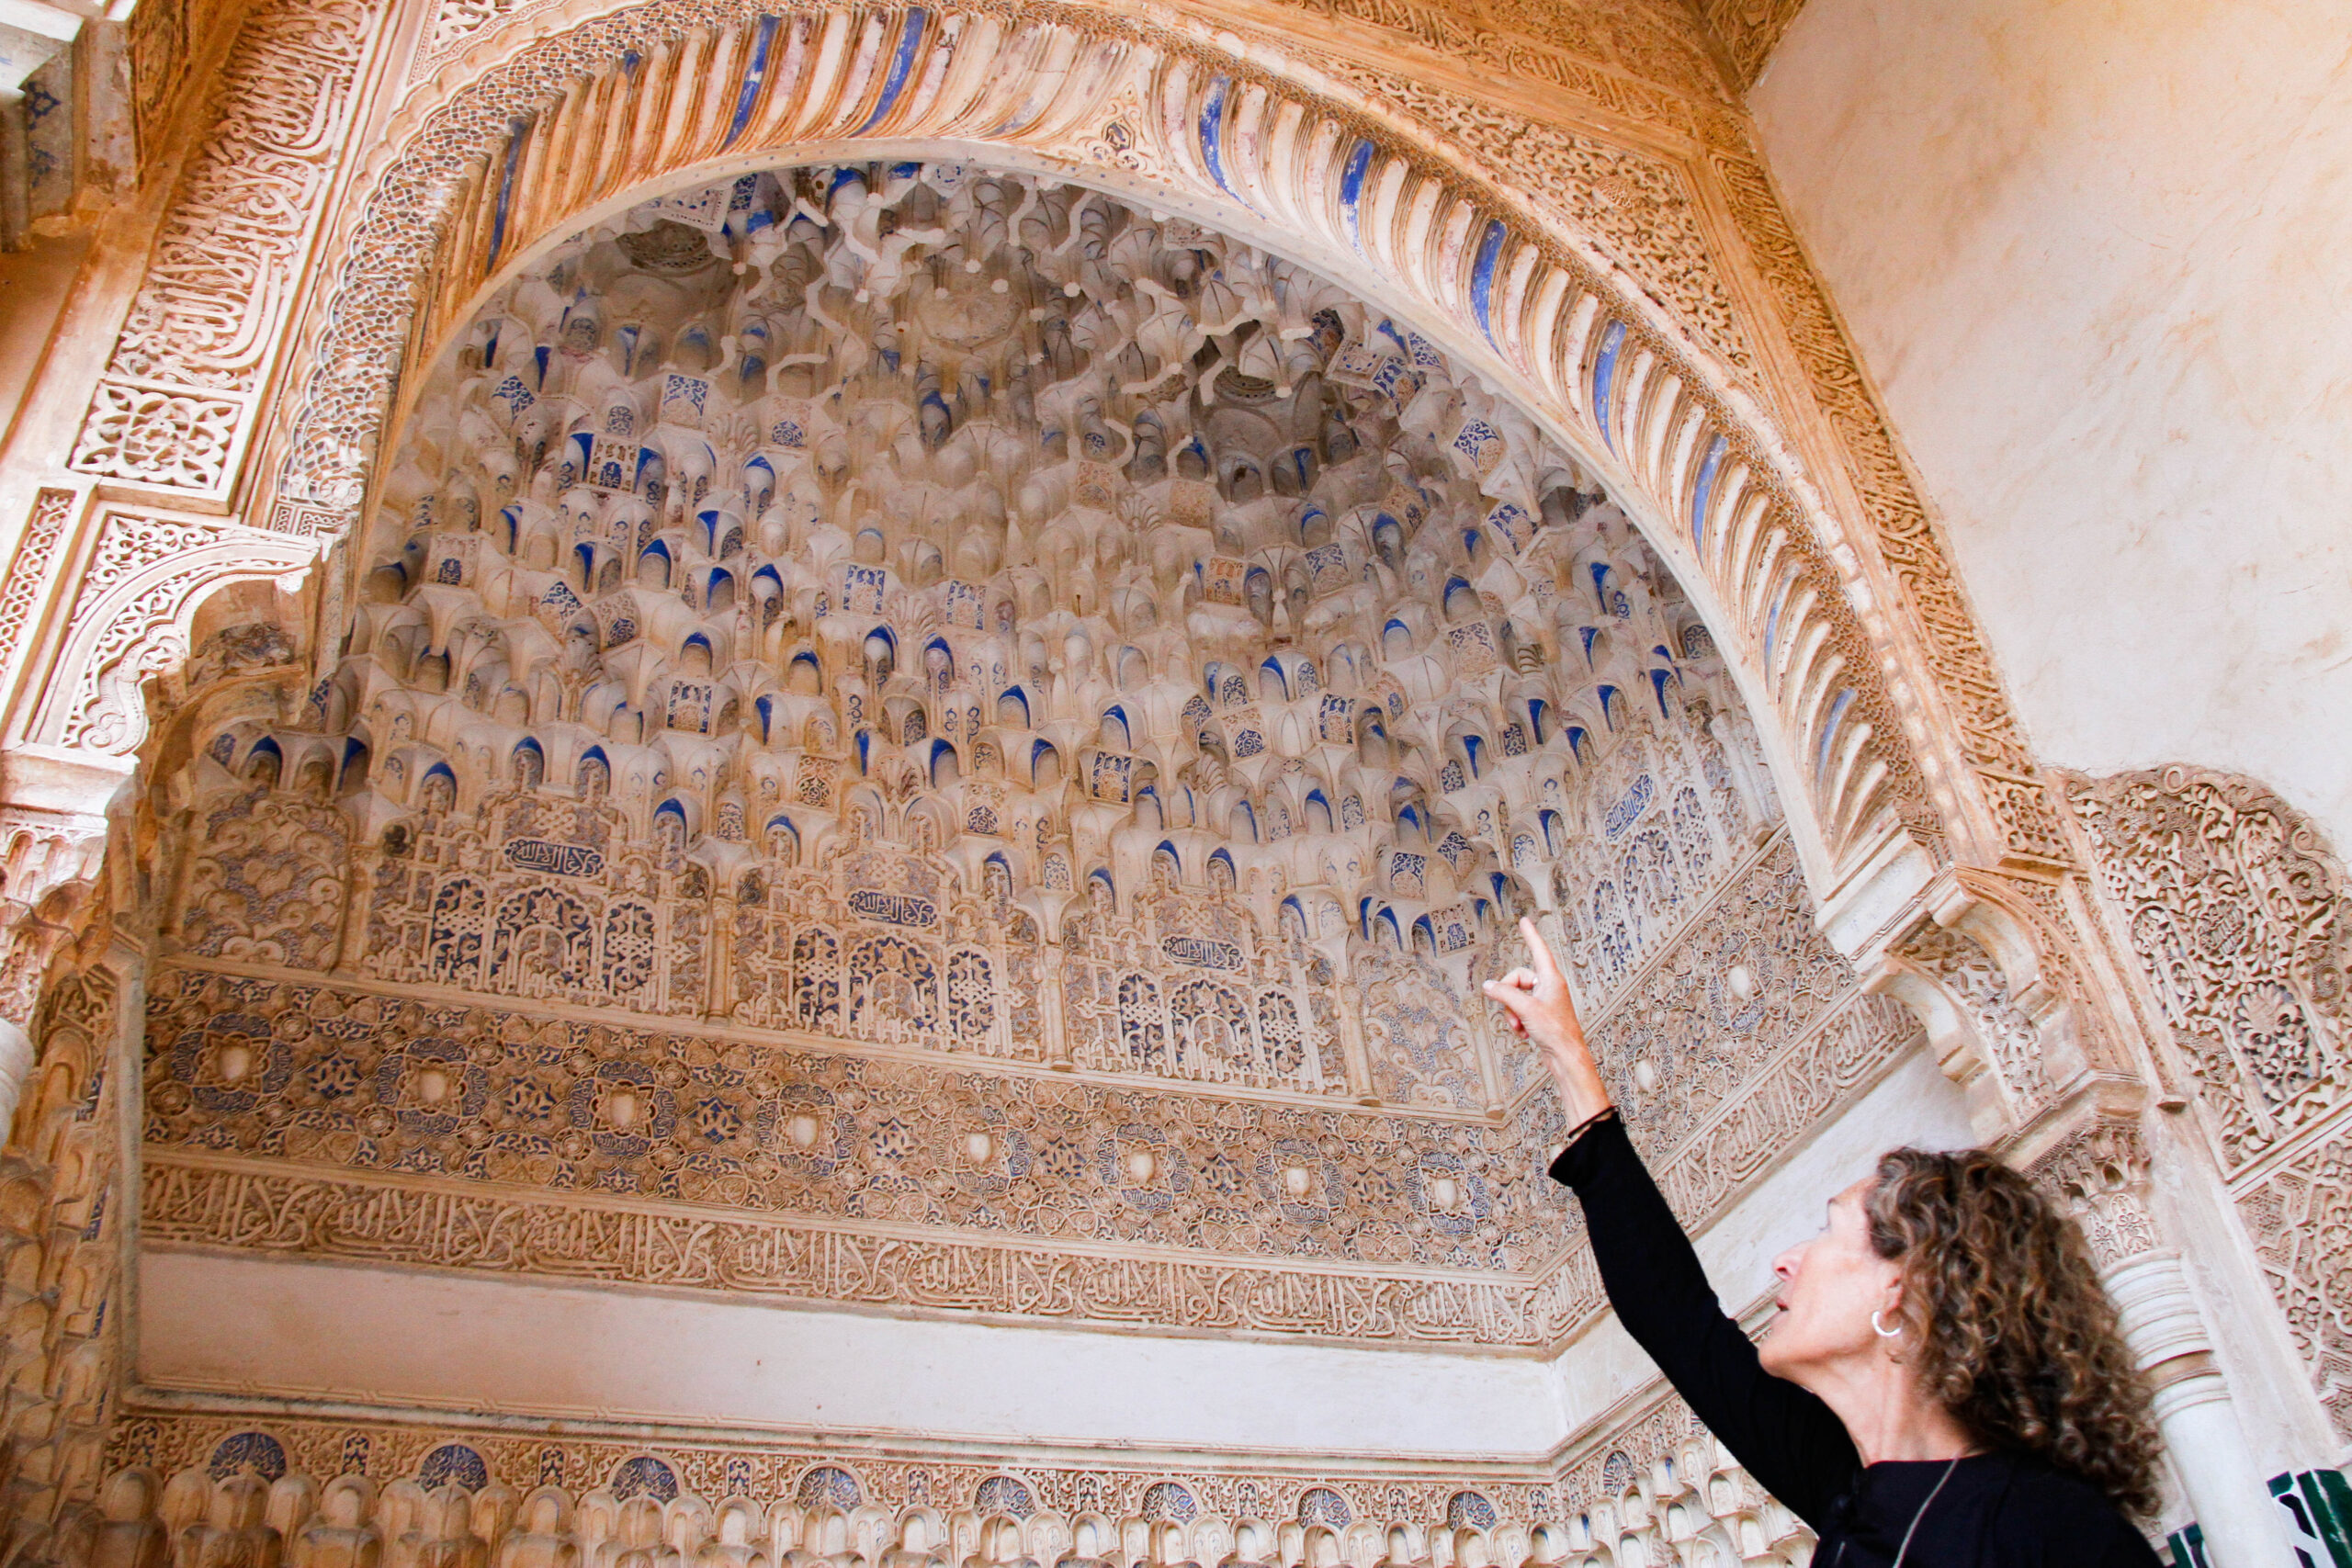 El color púrpura de las yeserías de la Alhambra procede de nano-esferas de oro formadas de modo natural